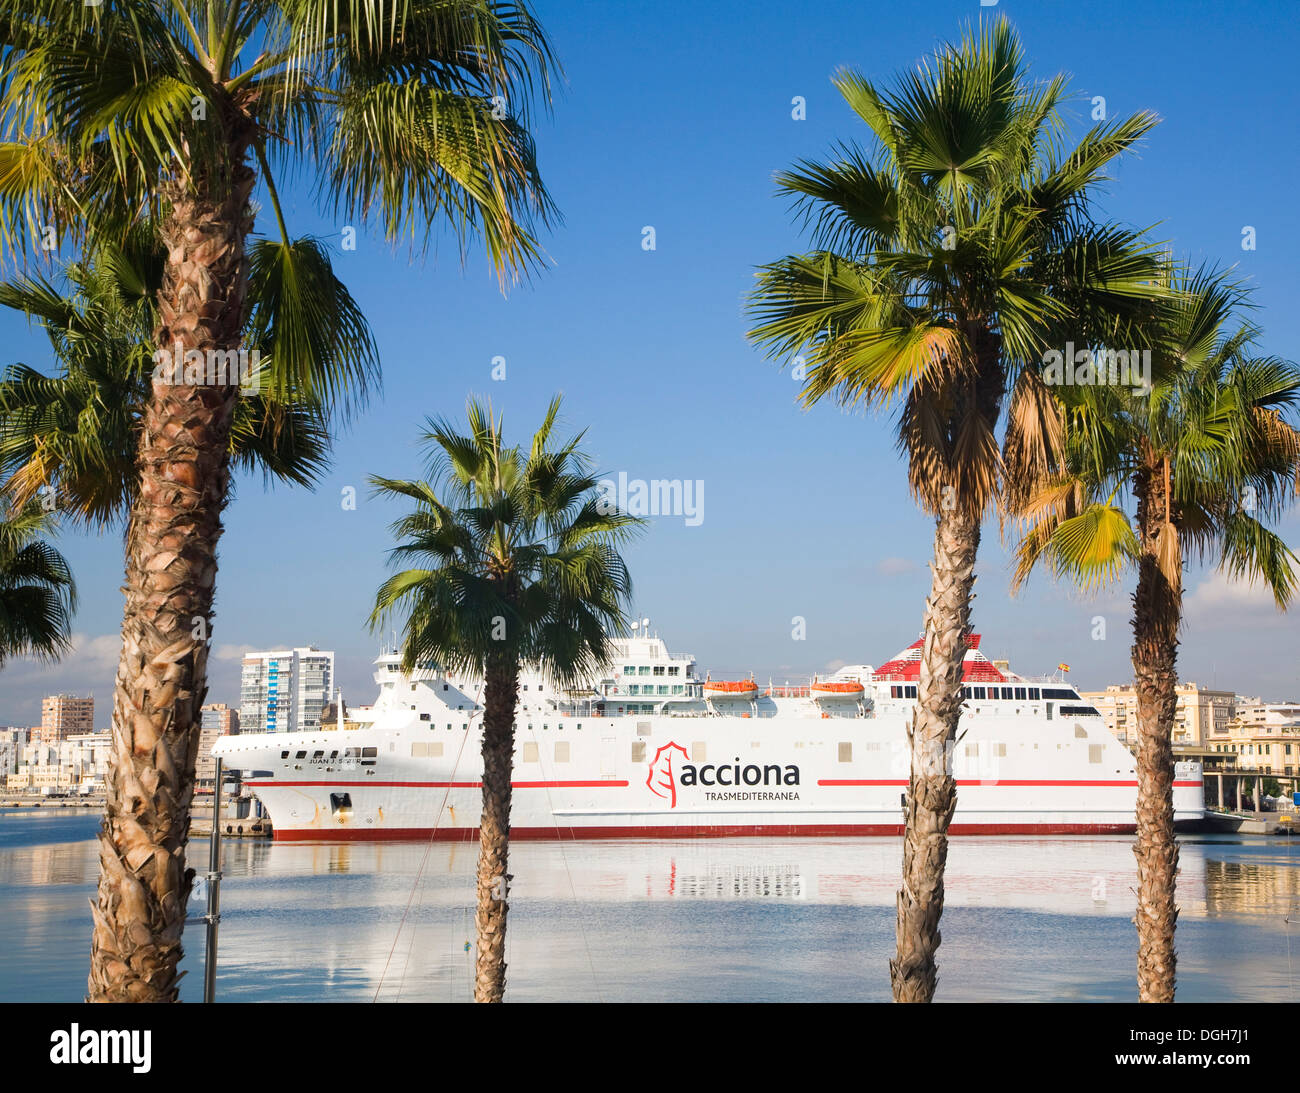 View  through palm trees to acciona ferry ship Malaga Spain Stock Photo